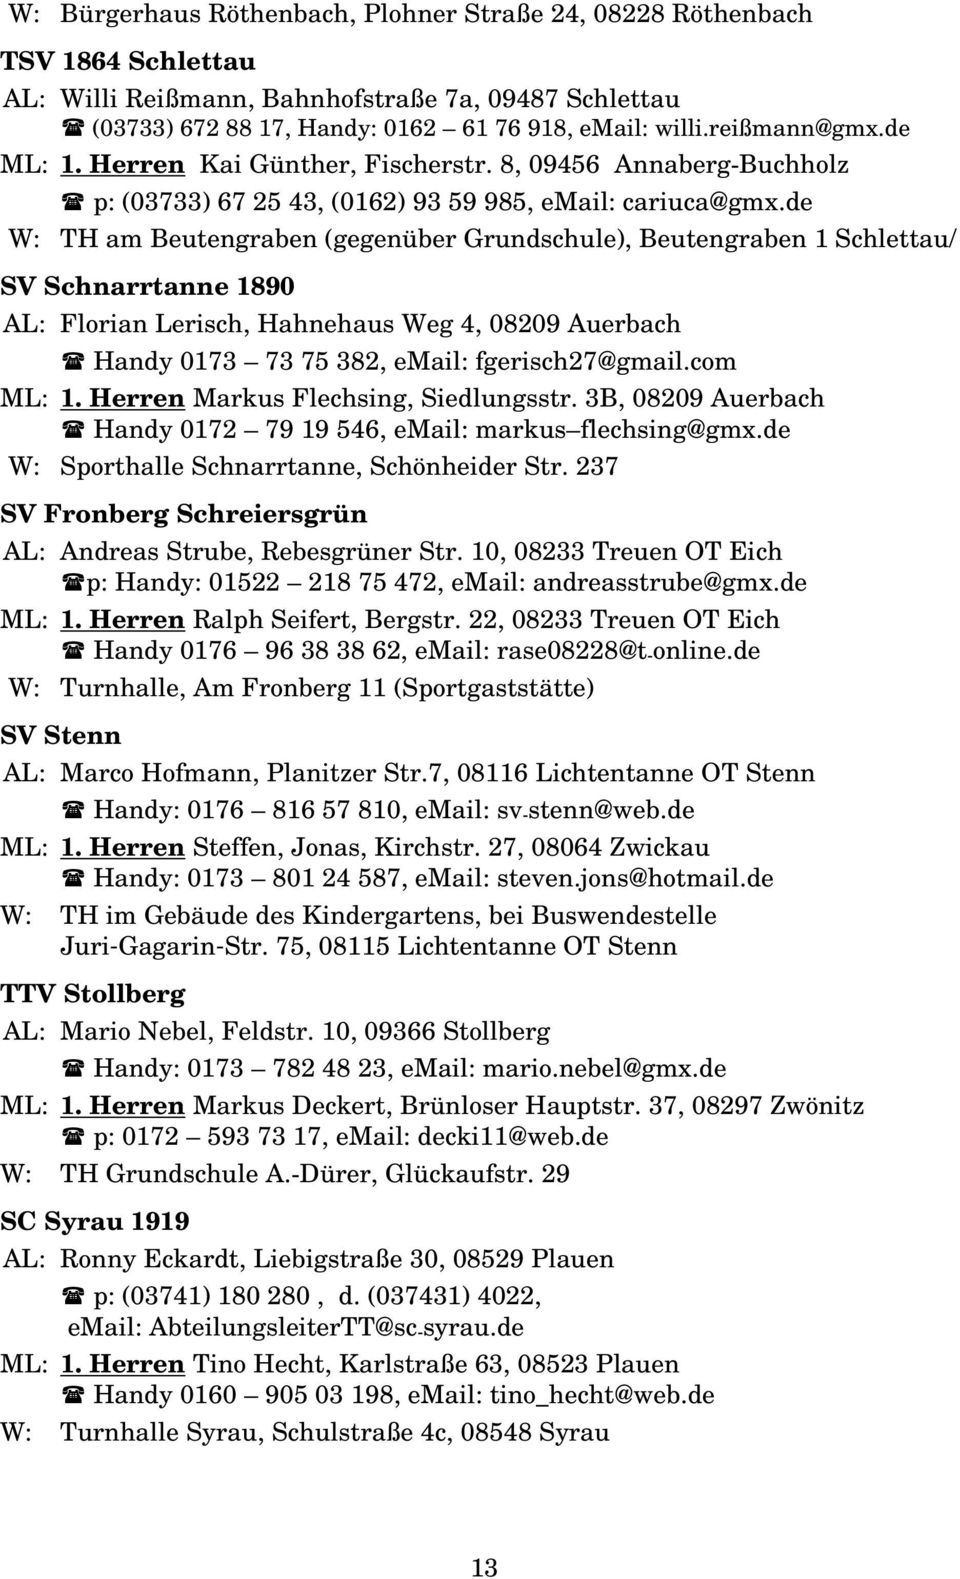 de W: TH am Beutengraben (gegenüber Grundschule), Beutengraben 1 Schlettau/ SV Schnarrtanne 1890 AL: Florian Lerisch, Hahnehaus Weg 4, 08209 Auerbach Handy 0173 73 75 382, email: fgerisch27@gmail.